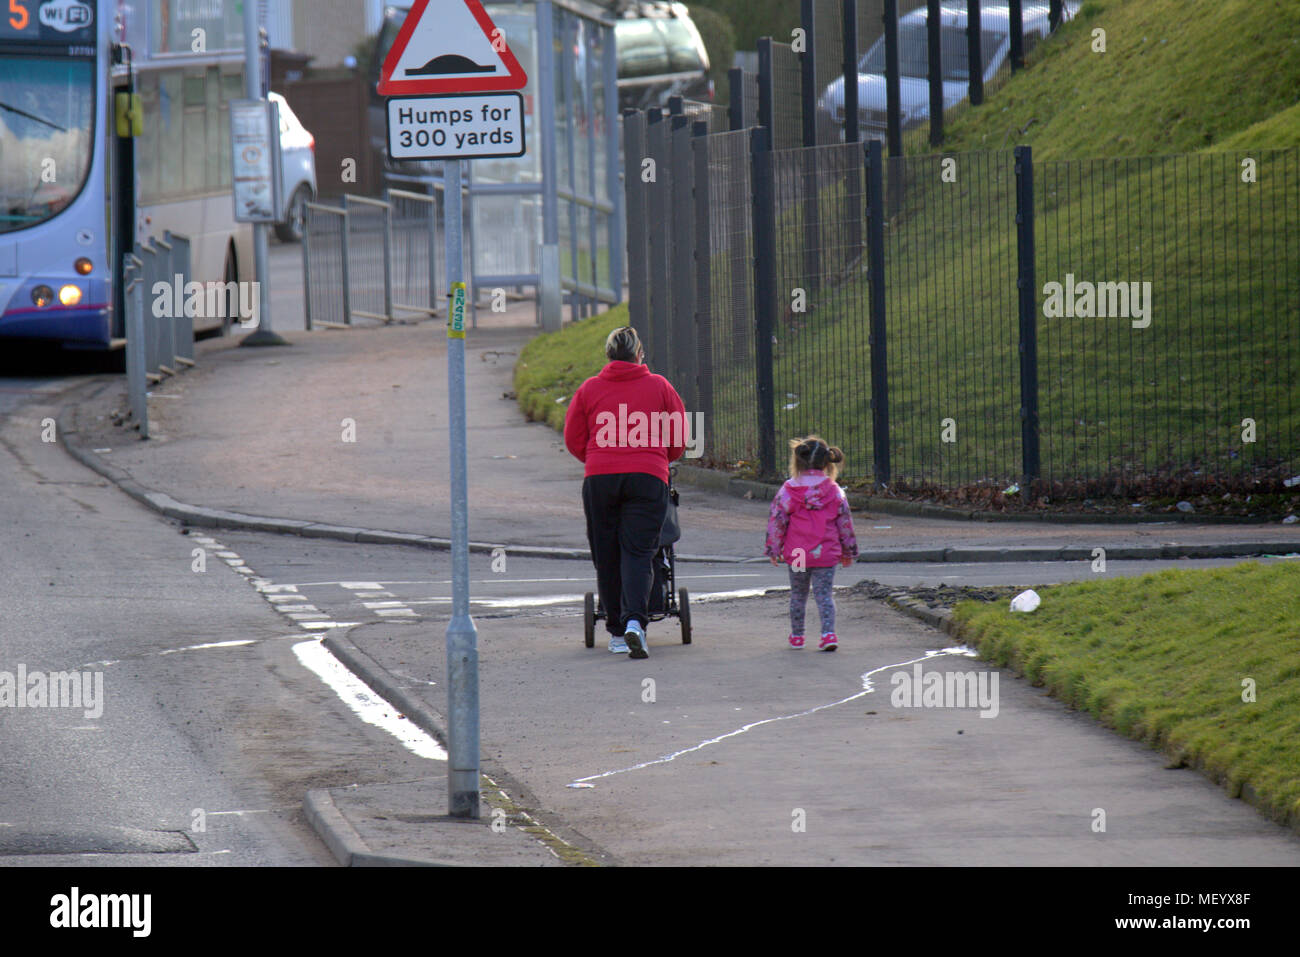 Die lokale Bevölkerung einzelne Frau Mutter schieben Kinderwagen auf der Straße gehsteig Bürgersteig Straße bus kleines Kind Castlemilk, Glasgow, Großbritannien Stockfoto